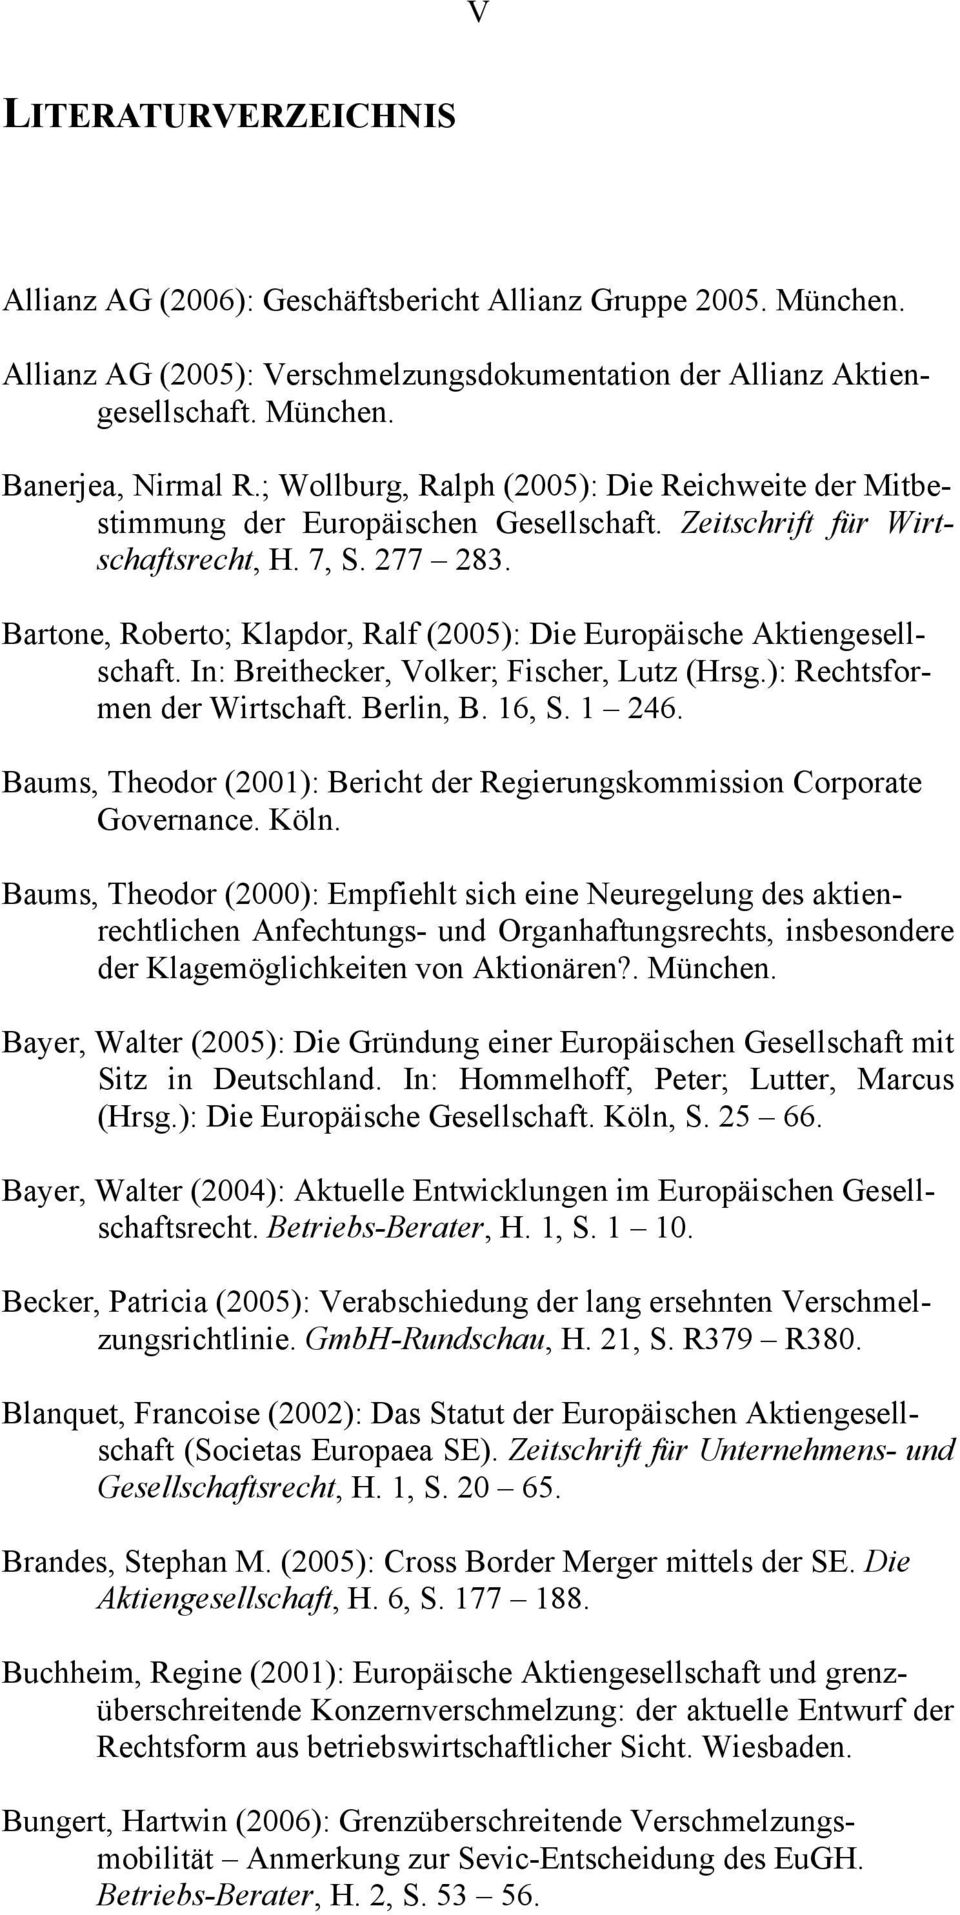 Bartone, Roberto; Klapdor, Ralf (2005): Die Europäische Aktiengesellschaft. In: Breithecker, Volker; Fischer, Lutz (Hrsg.): Rechtsformen der Wirtschaft. Berlin, B. 16, S. 1 246.